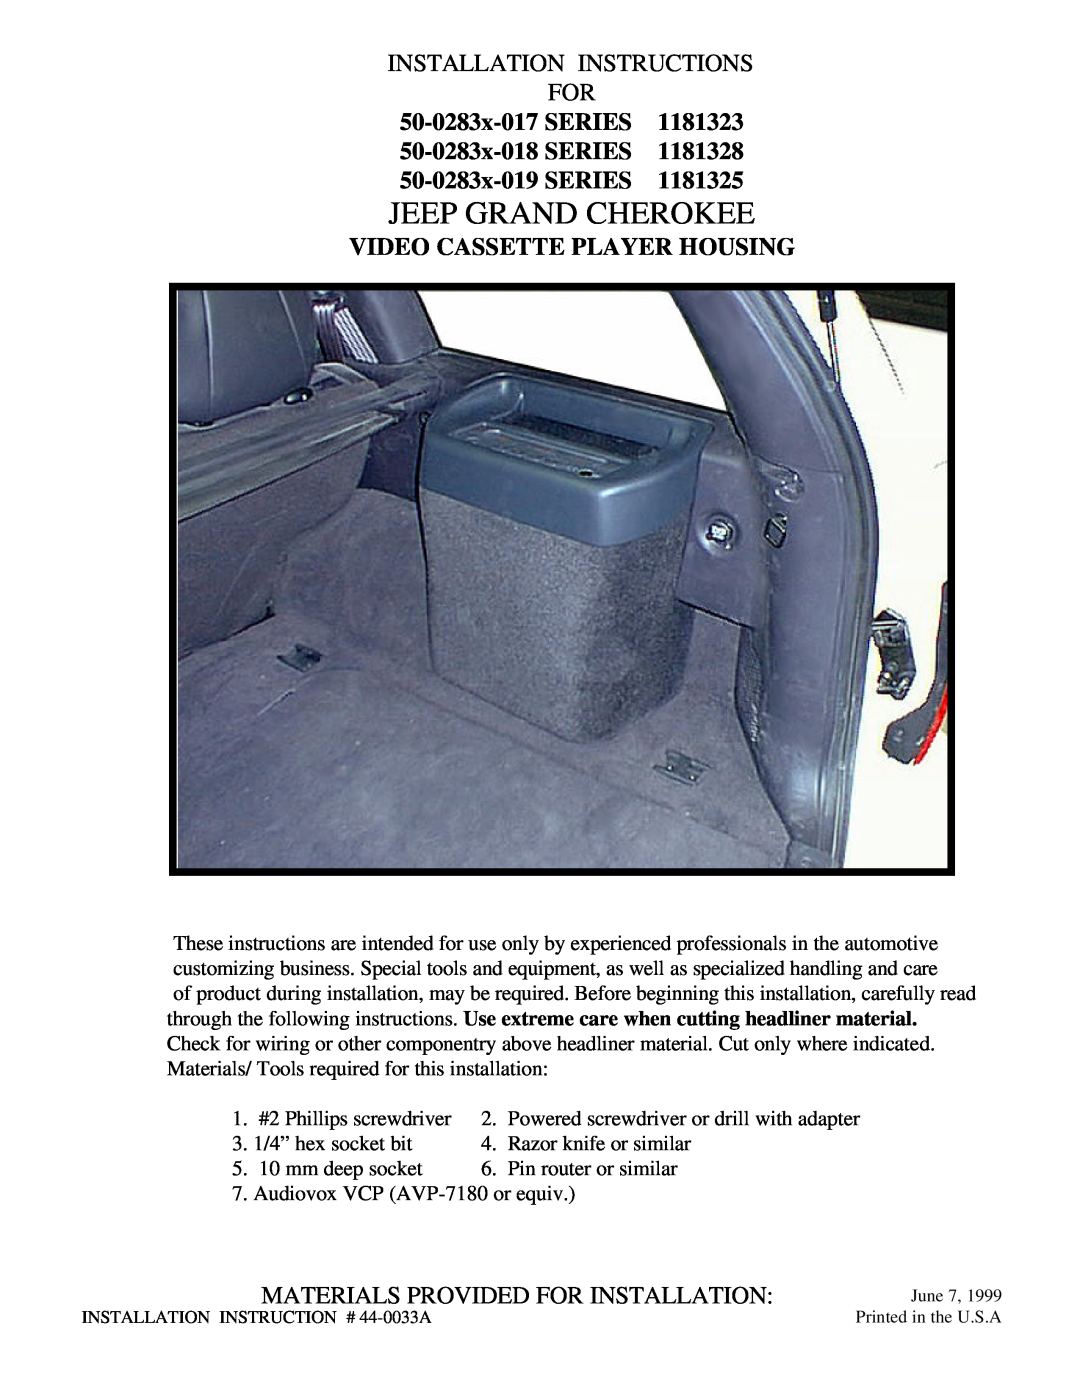 Jeep 50-0283x-019 SERIES, 50-0283x-017 SERIES installation instructions Jeep Grand Cherokee, Installation Instructions For 